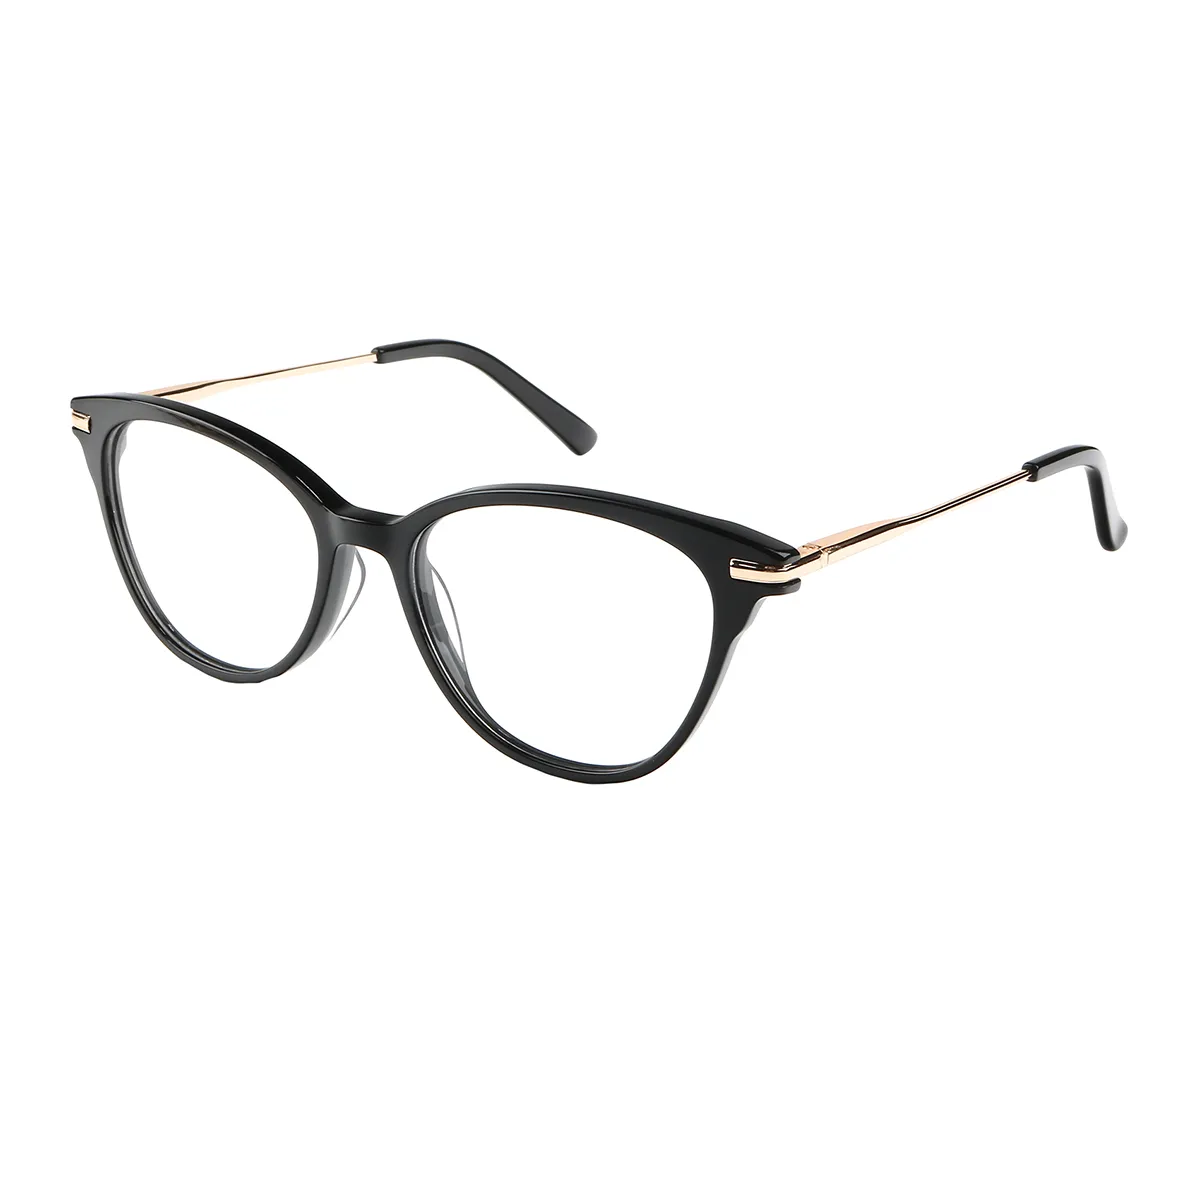 Dotti - Cat-eye Black Glasses for Women